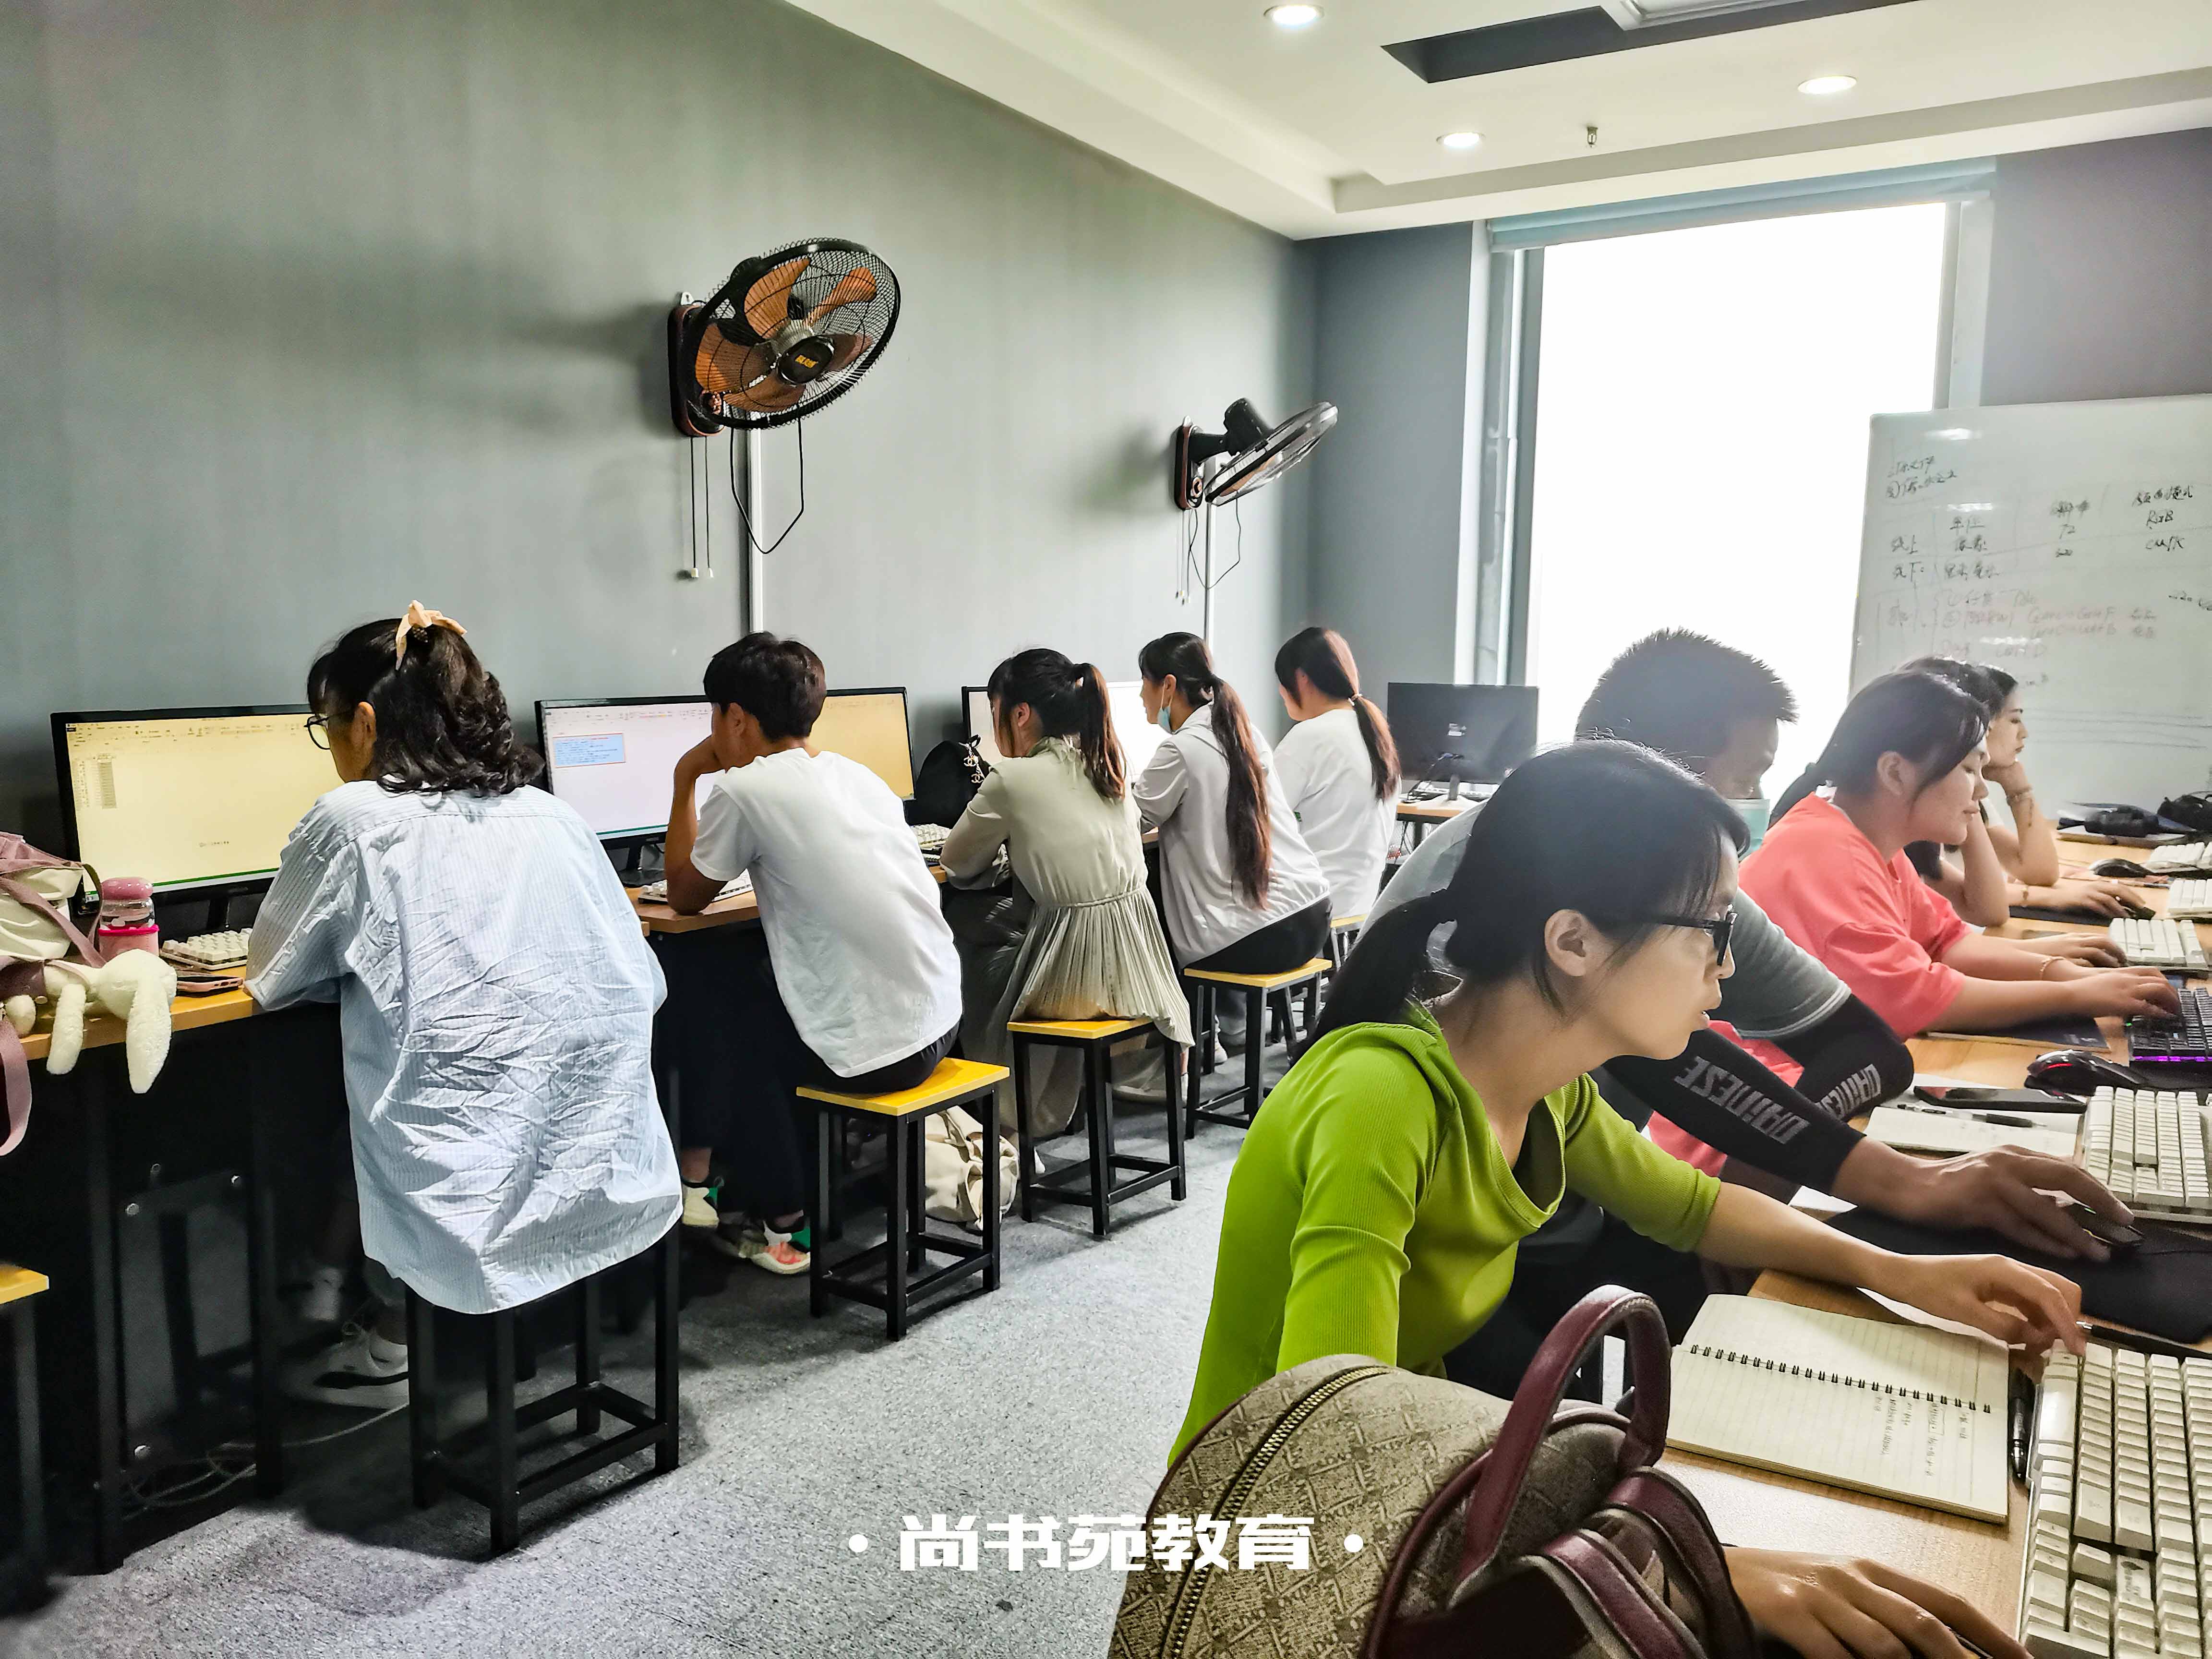 计算机软考培训中心 清河区尚书苑教育咨询中心